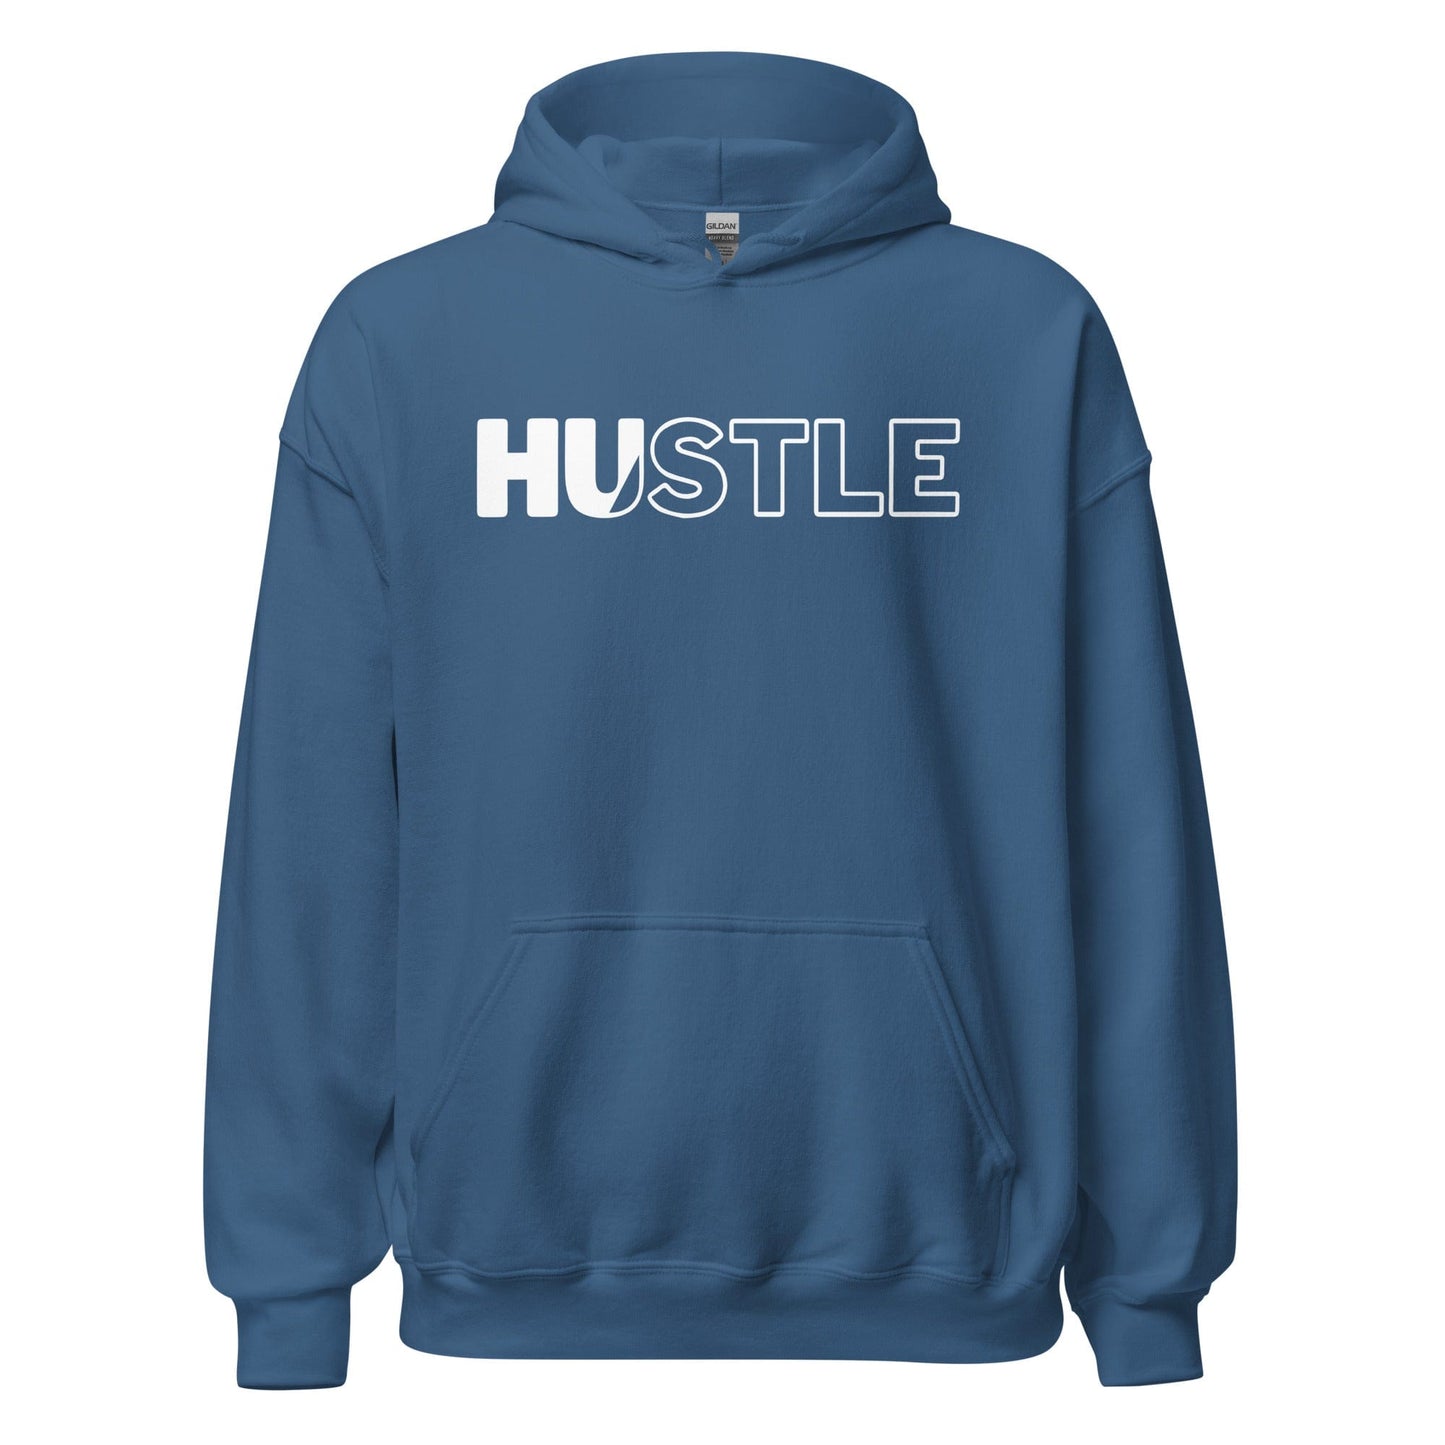 Hustle - Adult Hoodie